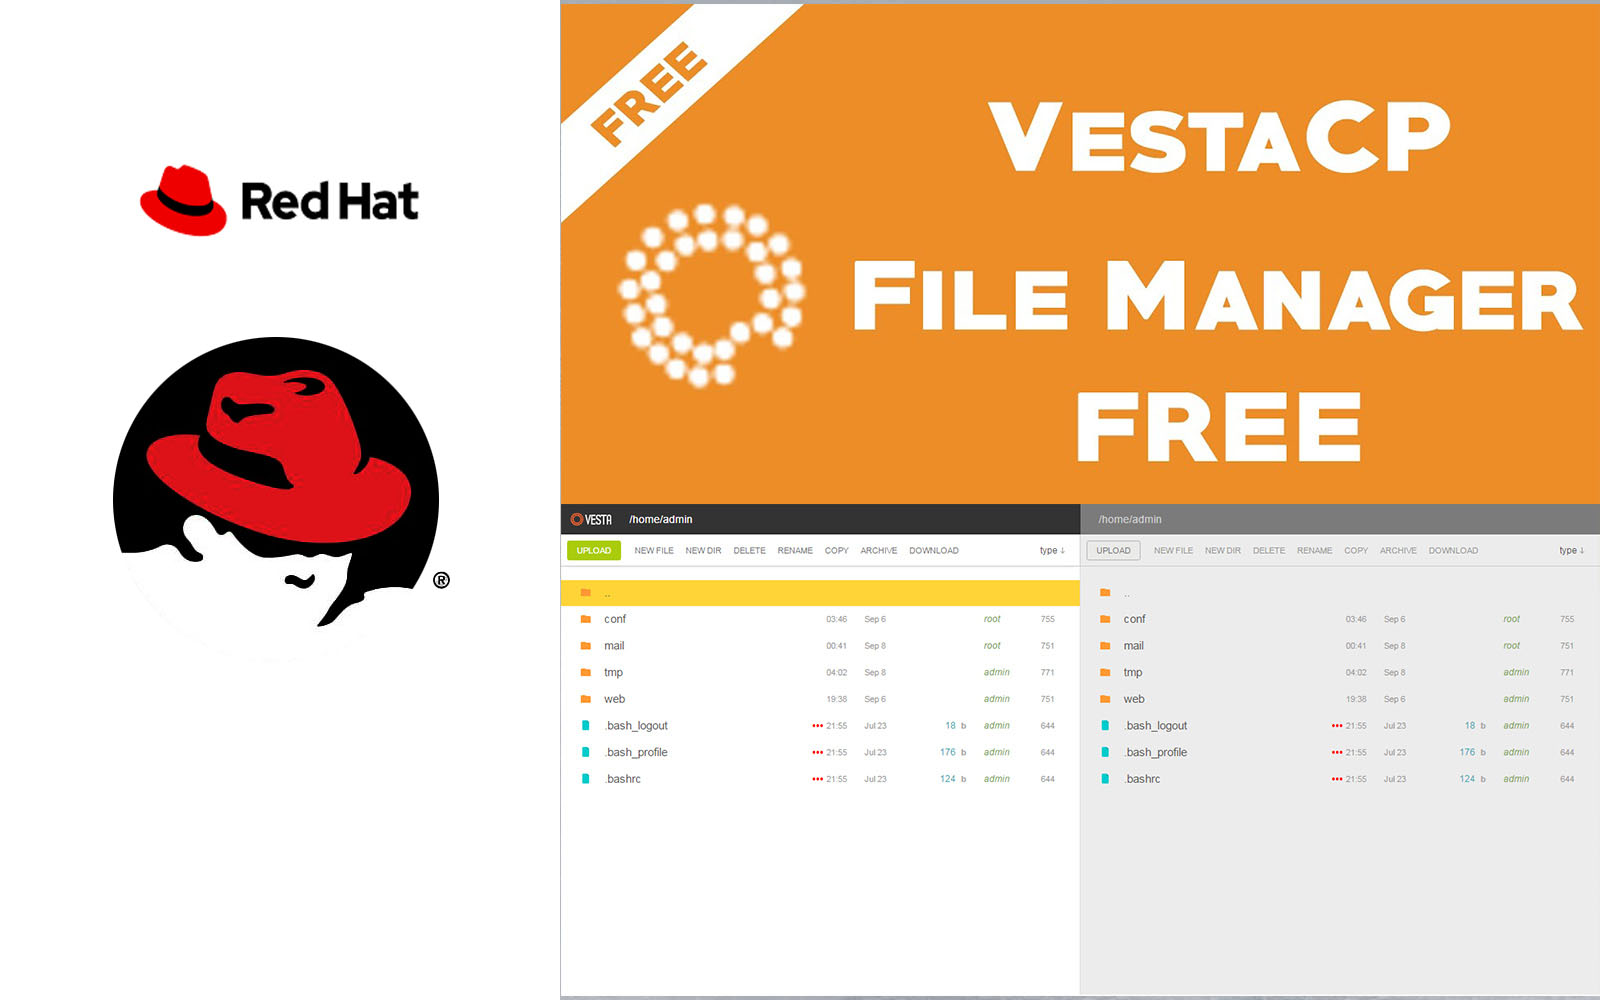 การใช้ Vesta CP file Manager ฟรี